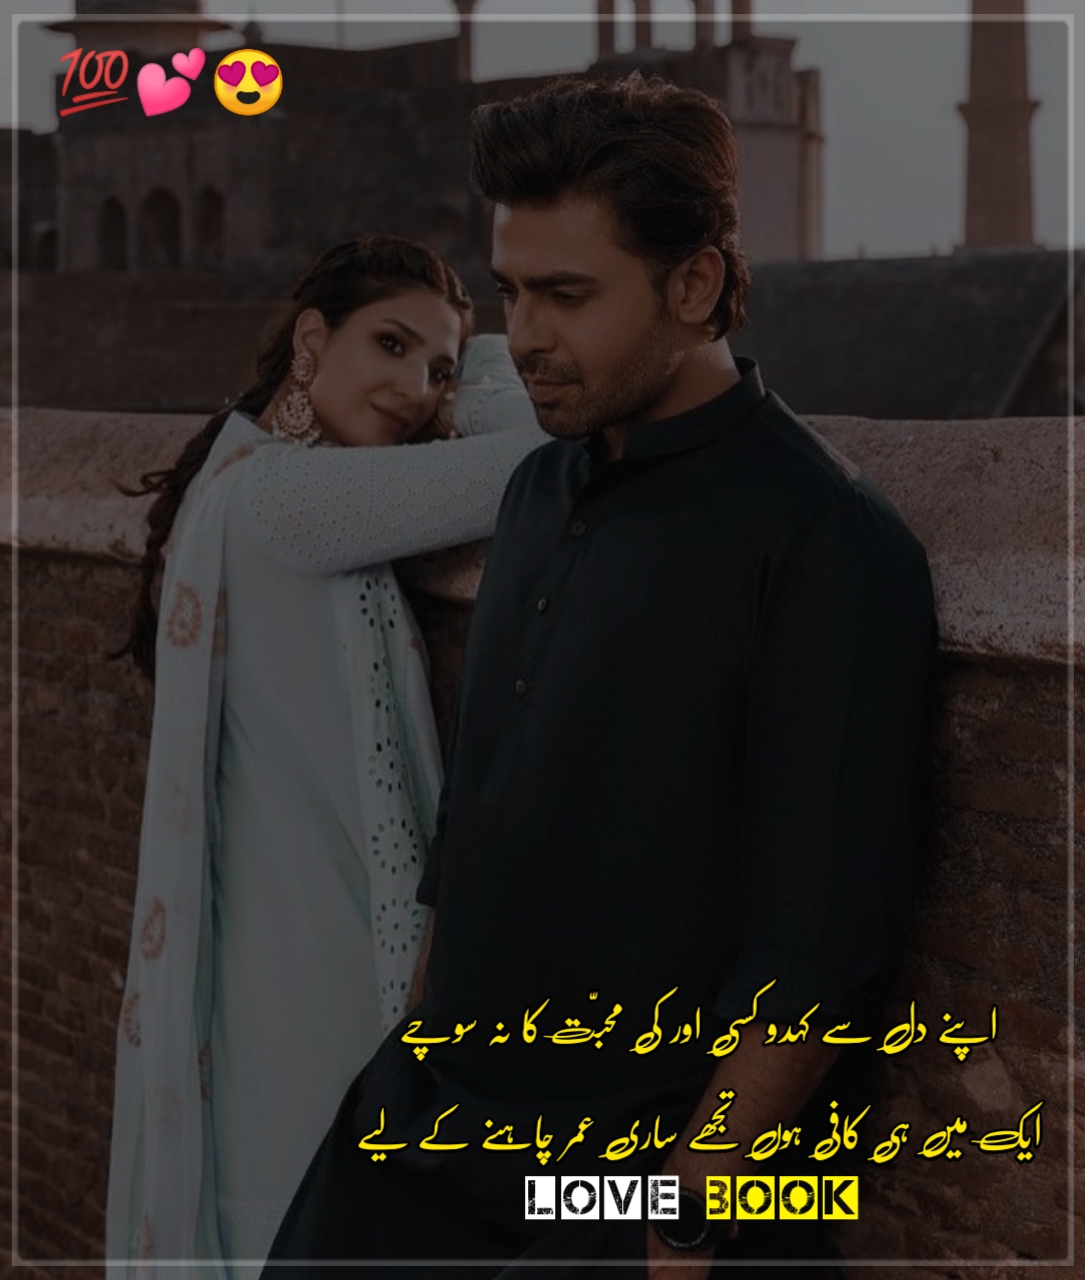 best urdu poetry for lovers